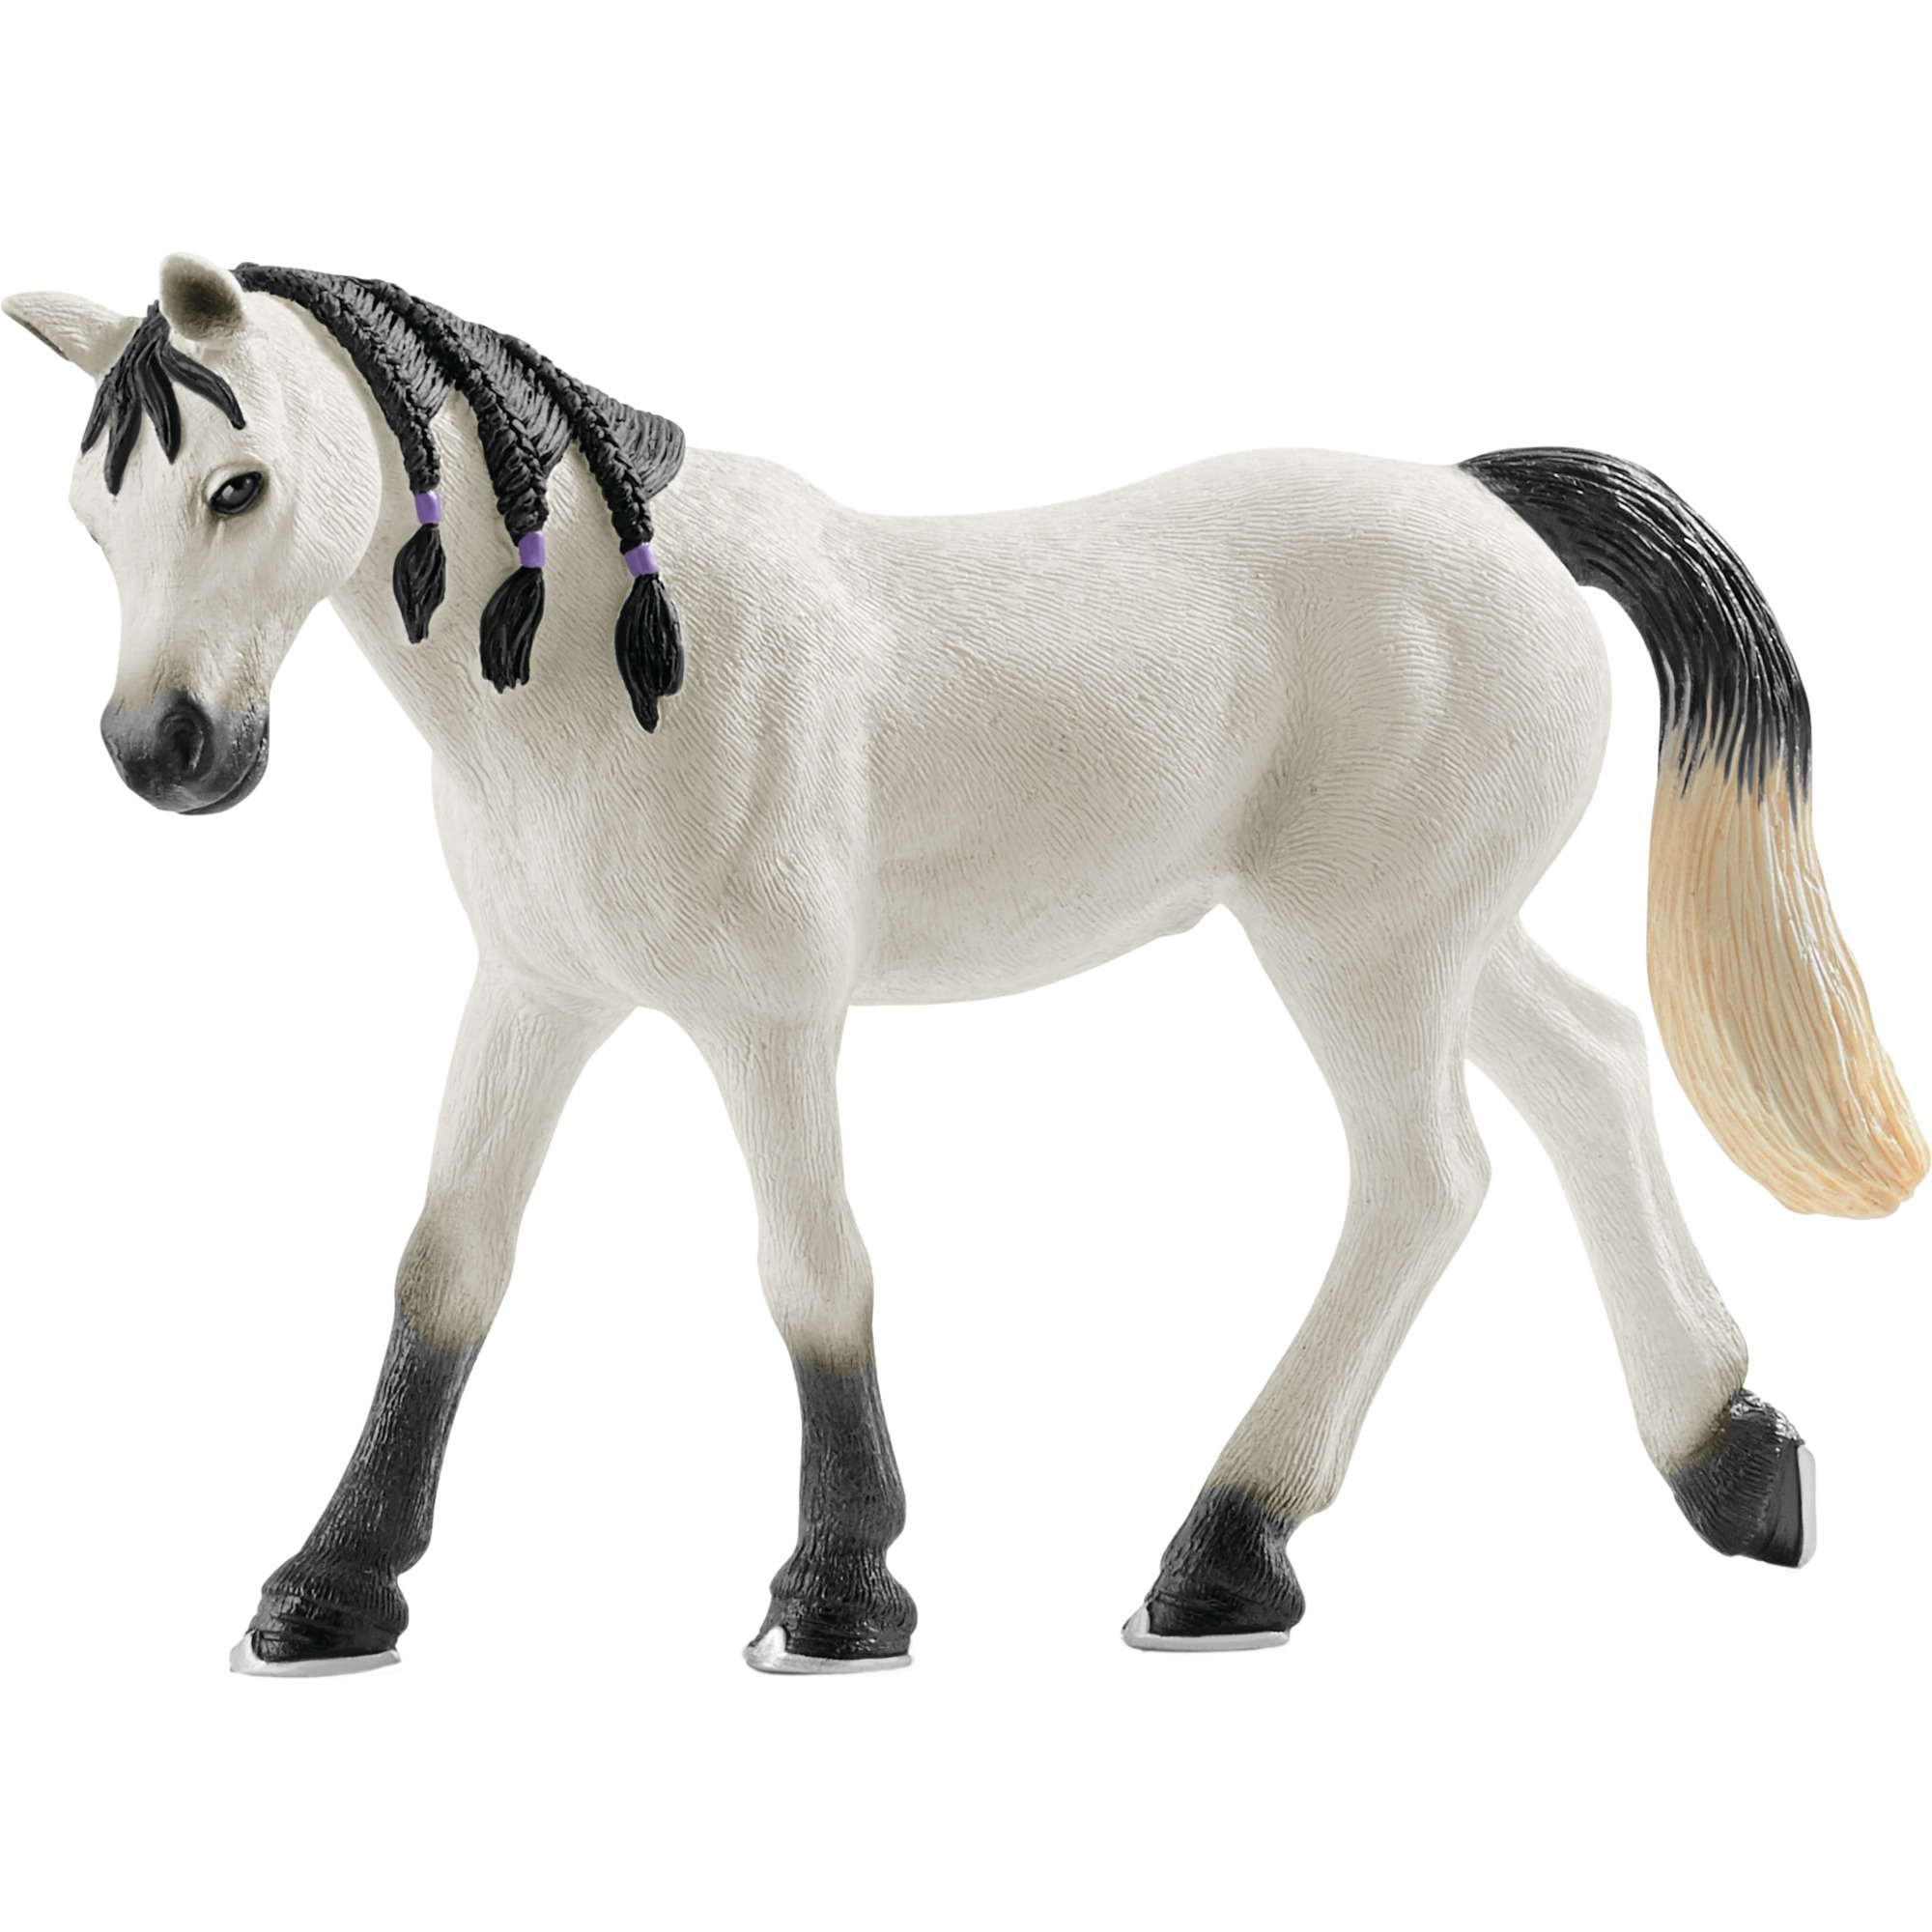 Image of Alternate - Horse Club Araber Stute, Spielfigur online einkaufen bei Alternate